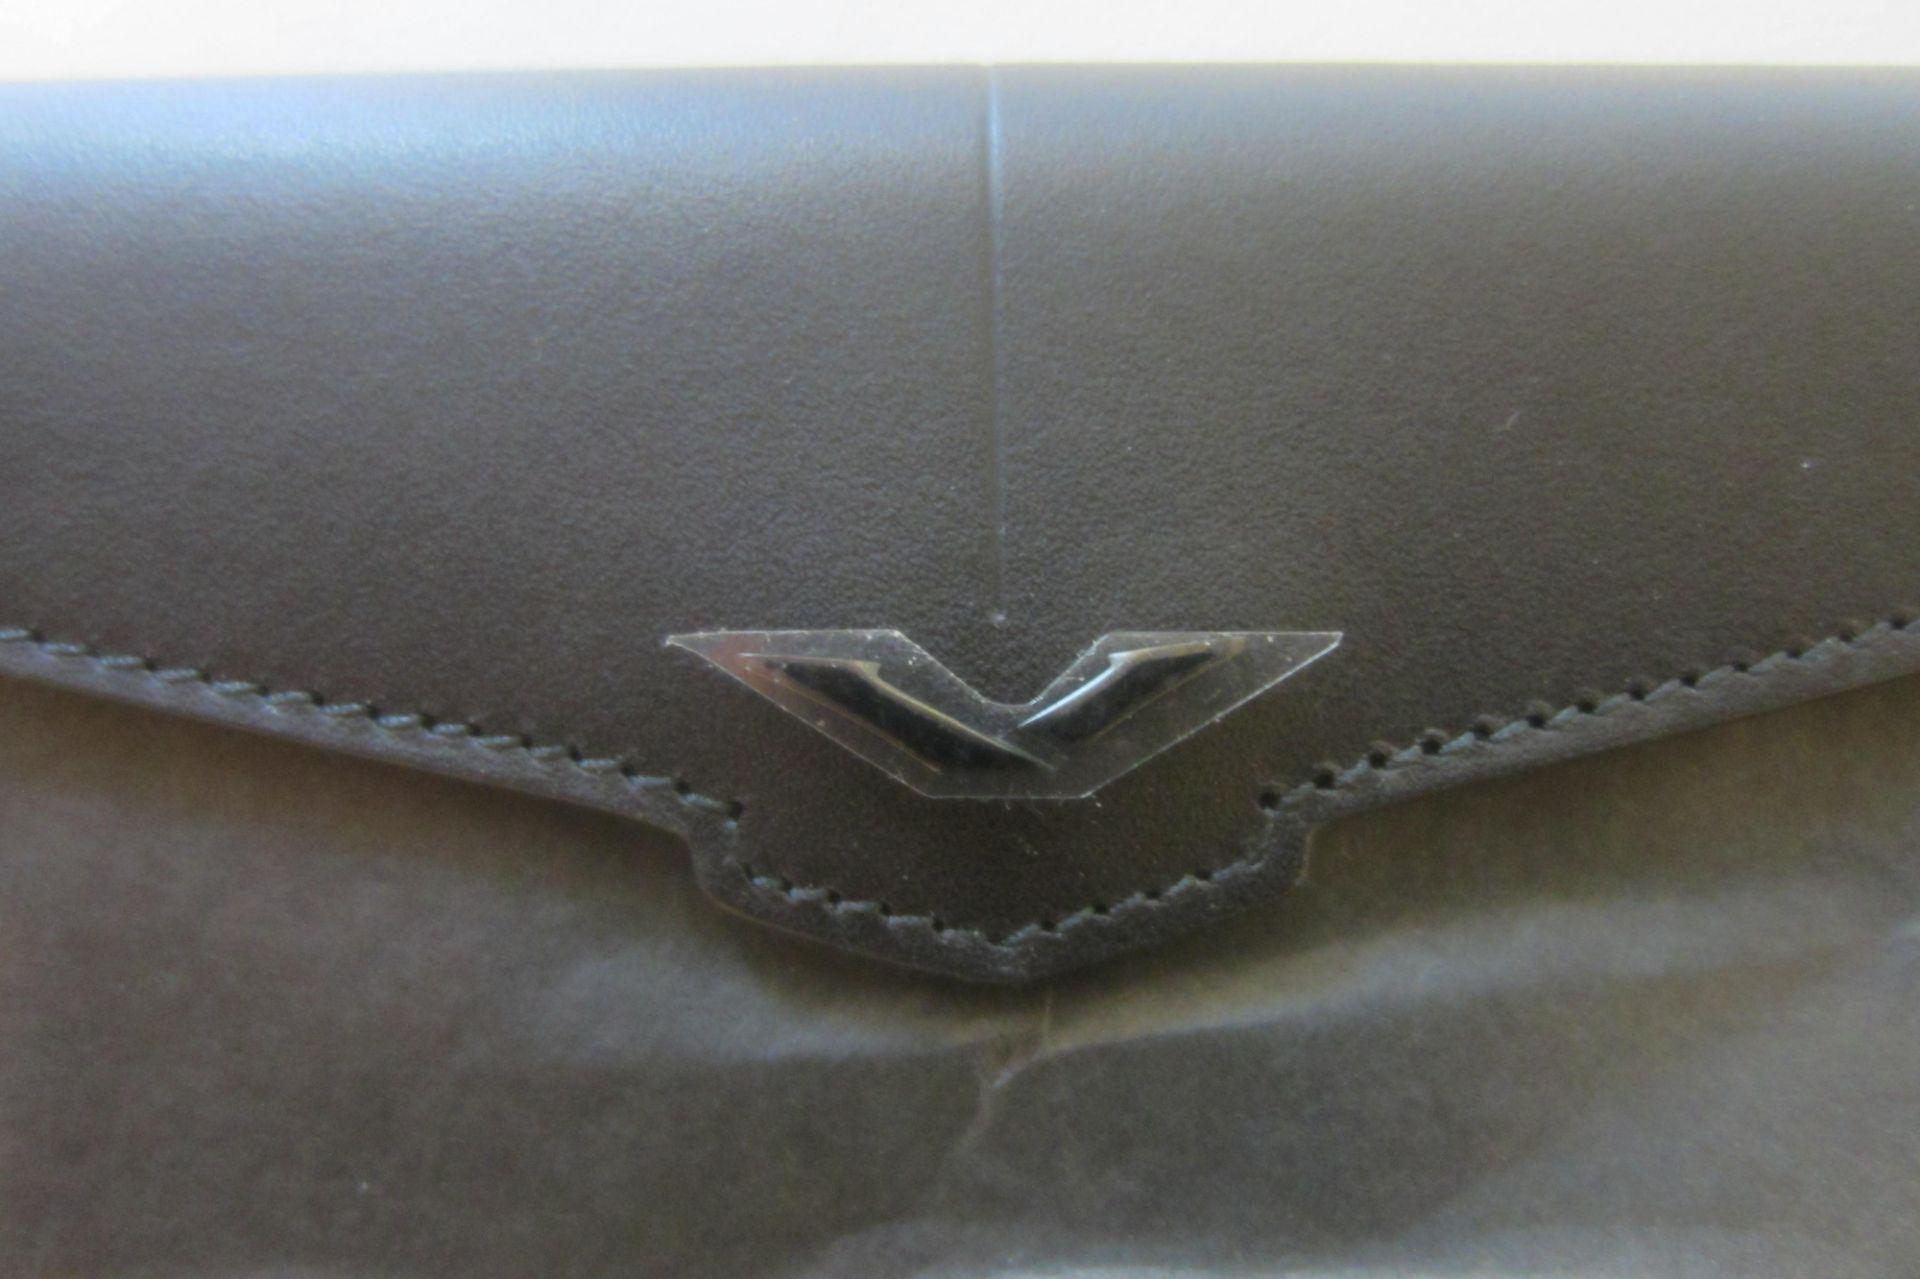 Signature S Black Leather Case with Black "V" Insignia - Bild 2 aus 2